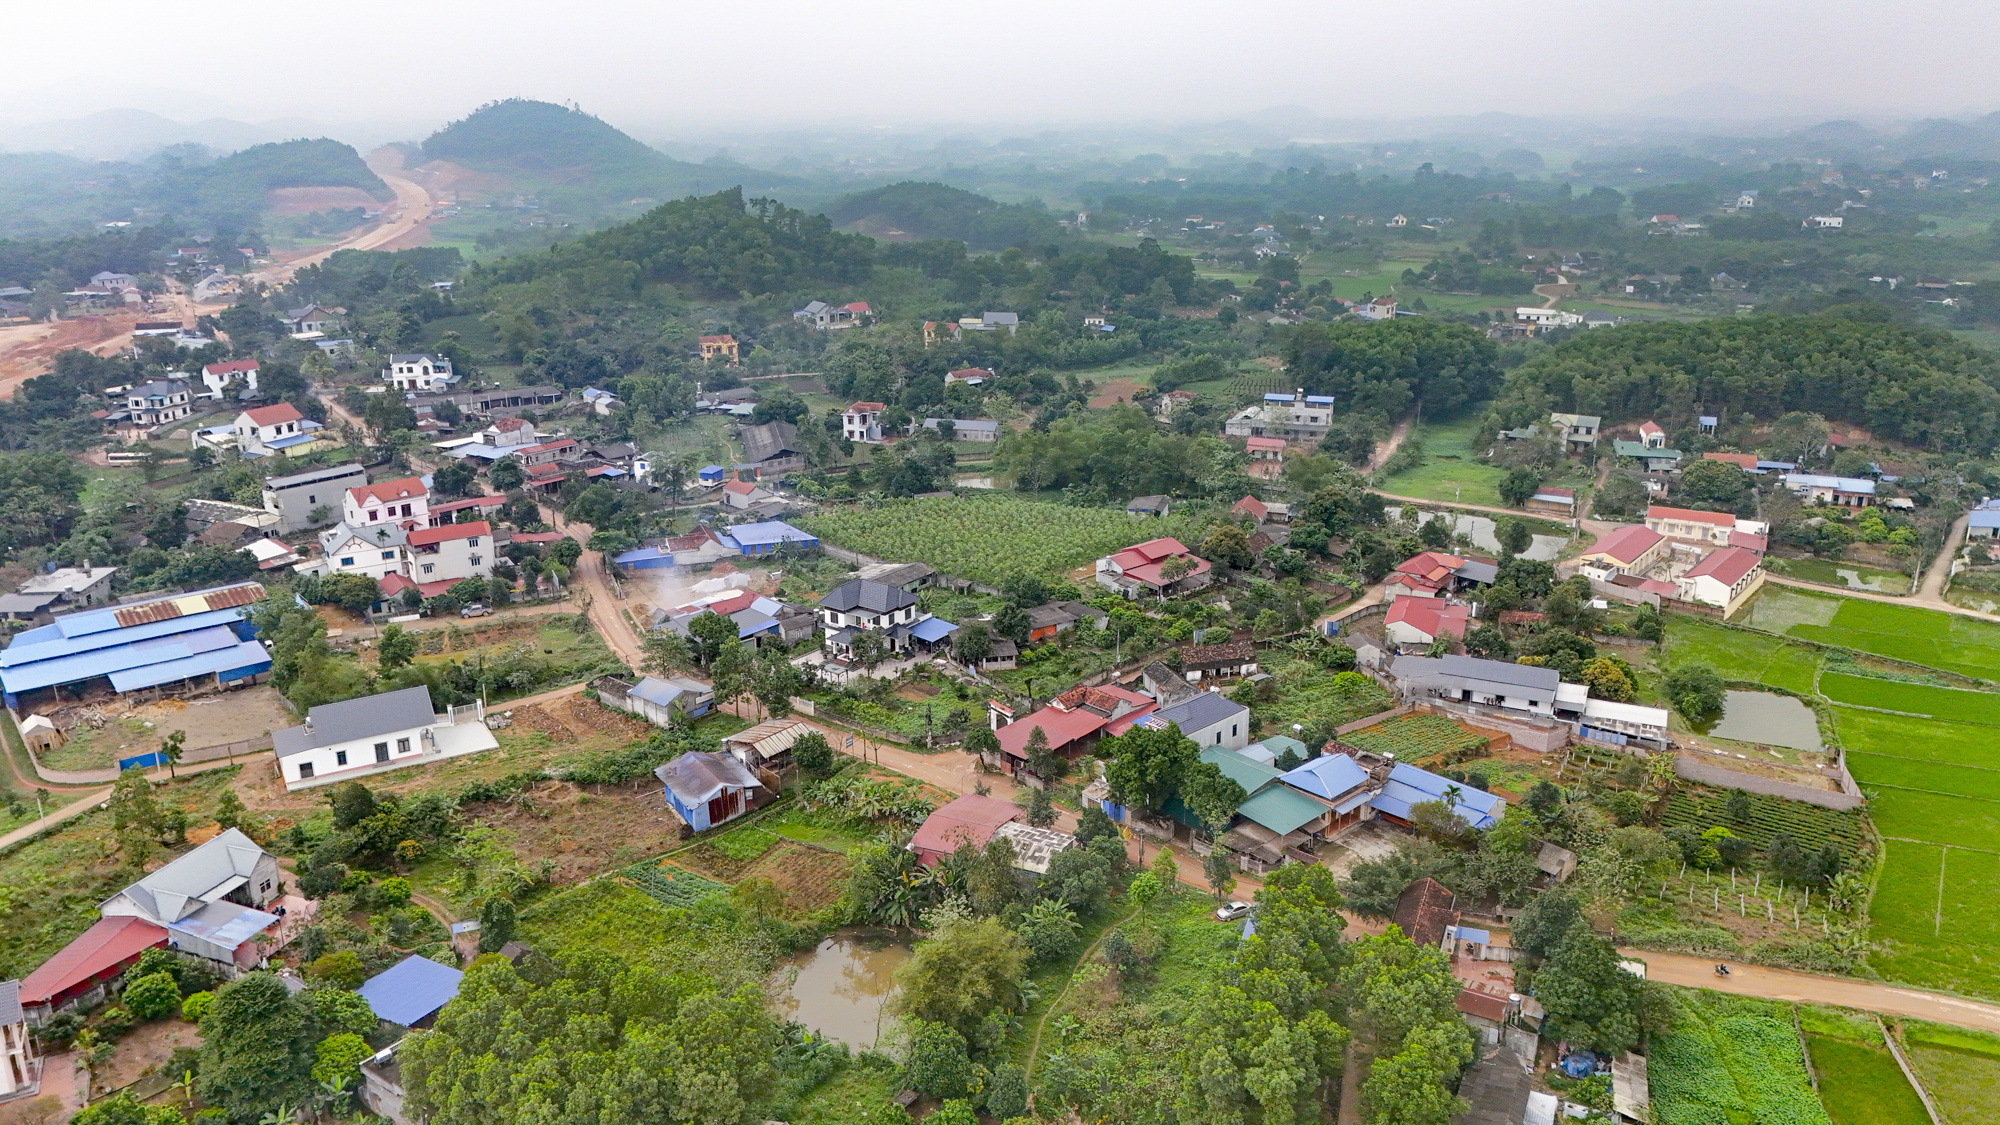 Khu vực sẽ trở thành Khu công nghiệp - Đô thị - Dịch vụ lớn nhất tỉnh Thái Nguyên, gần bằng tổng diện tích khu công nghiệp toàn tỉnh hiện nay cộng lại- Ảnh 4.